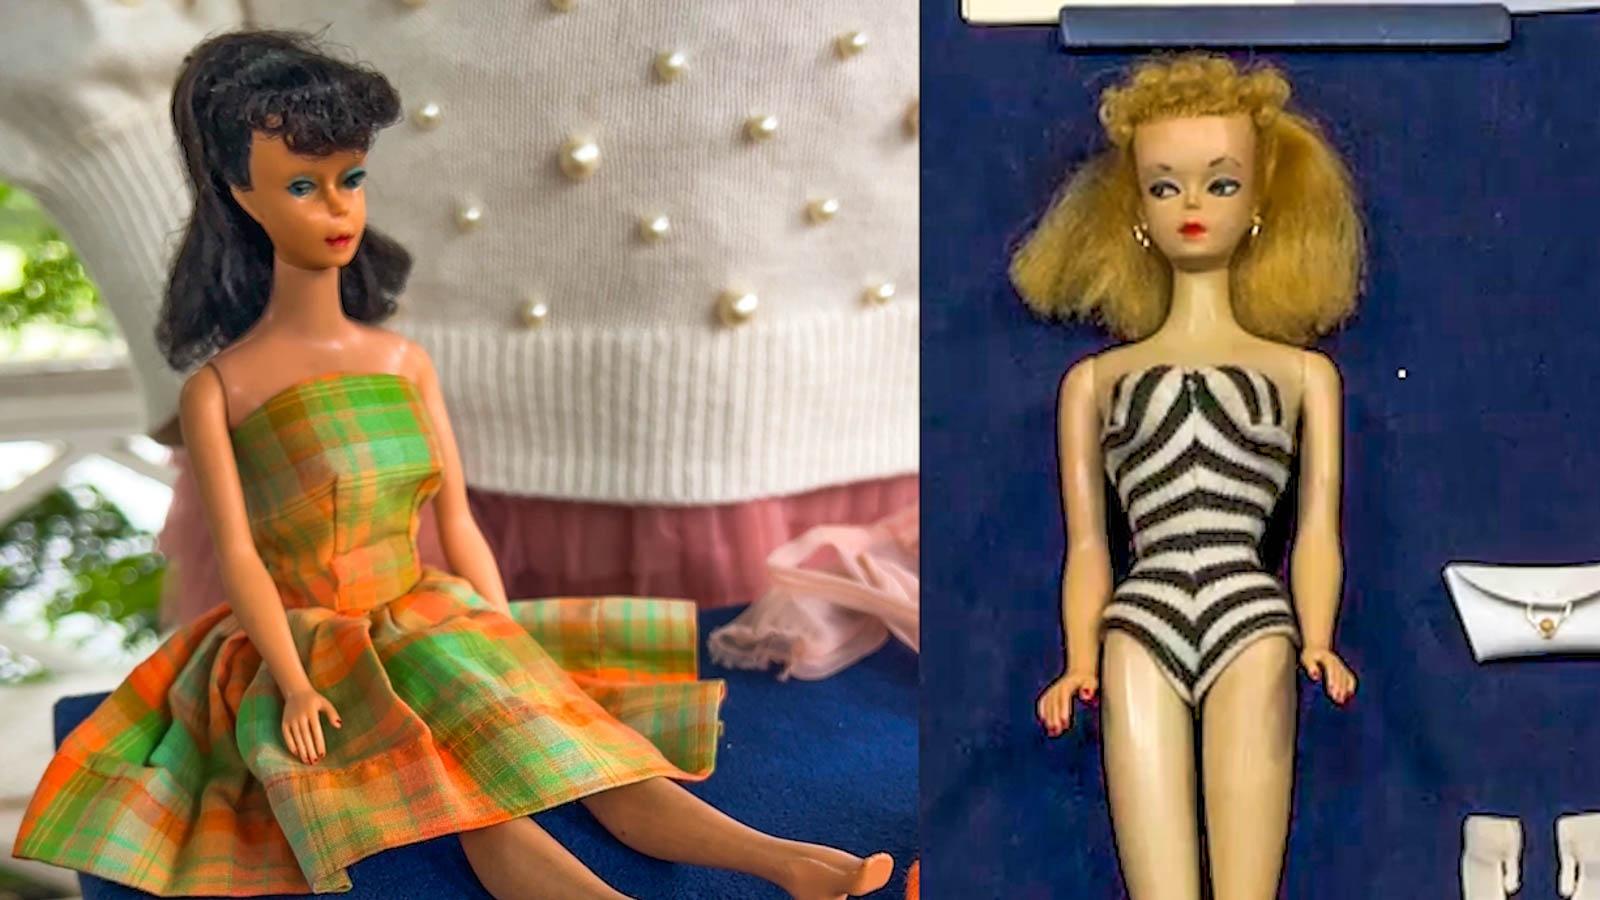 old fashioned barbie dolls